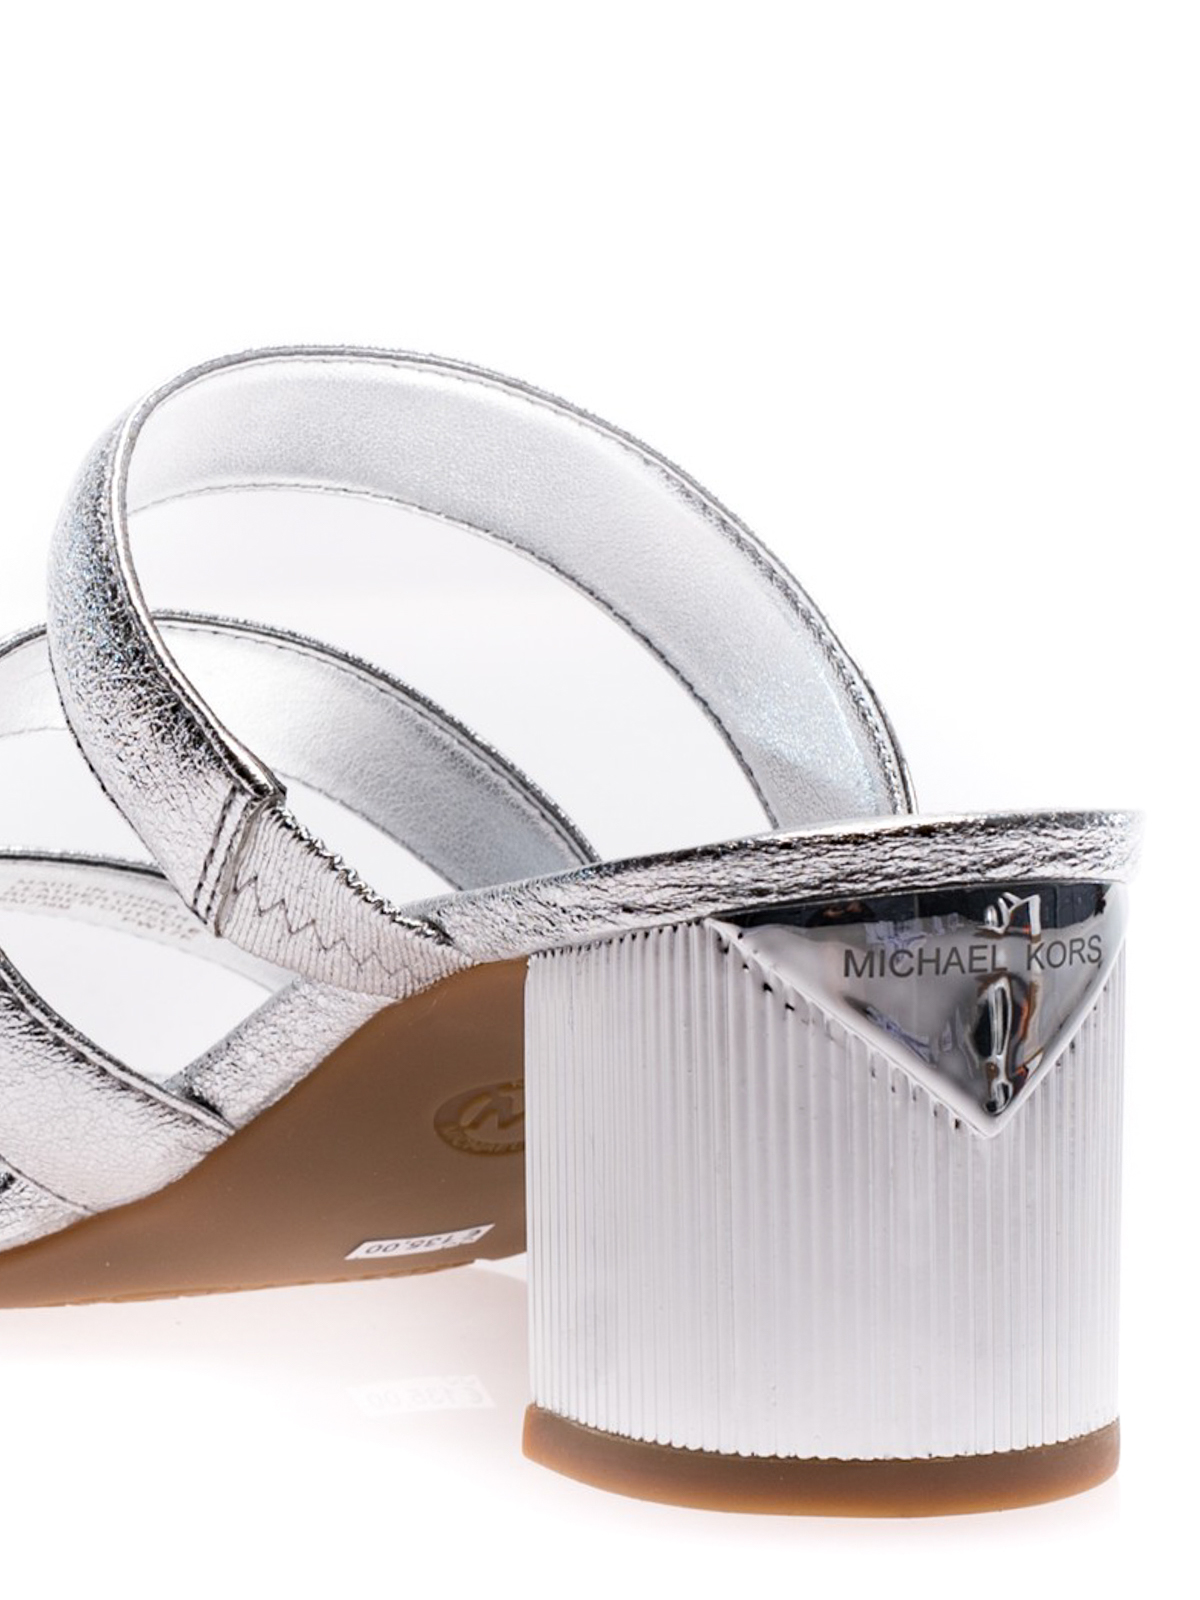 Sandals Michael Kors  Paloma Flex Mule silver sandals  40S8PAMP1M040